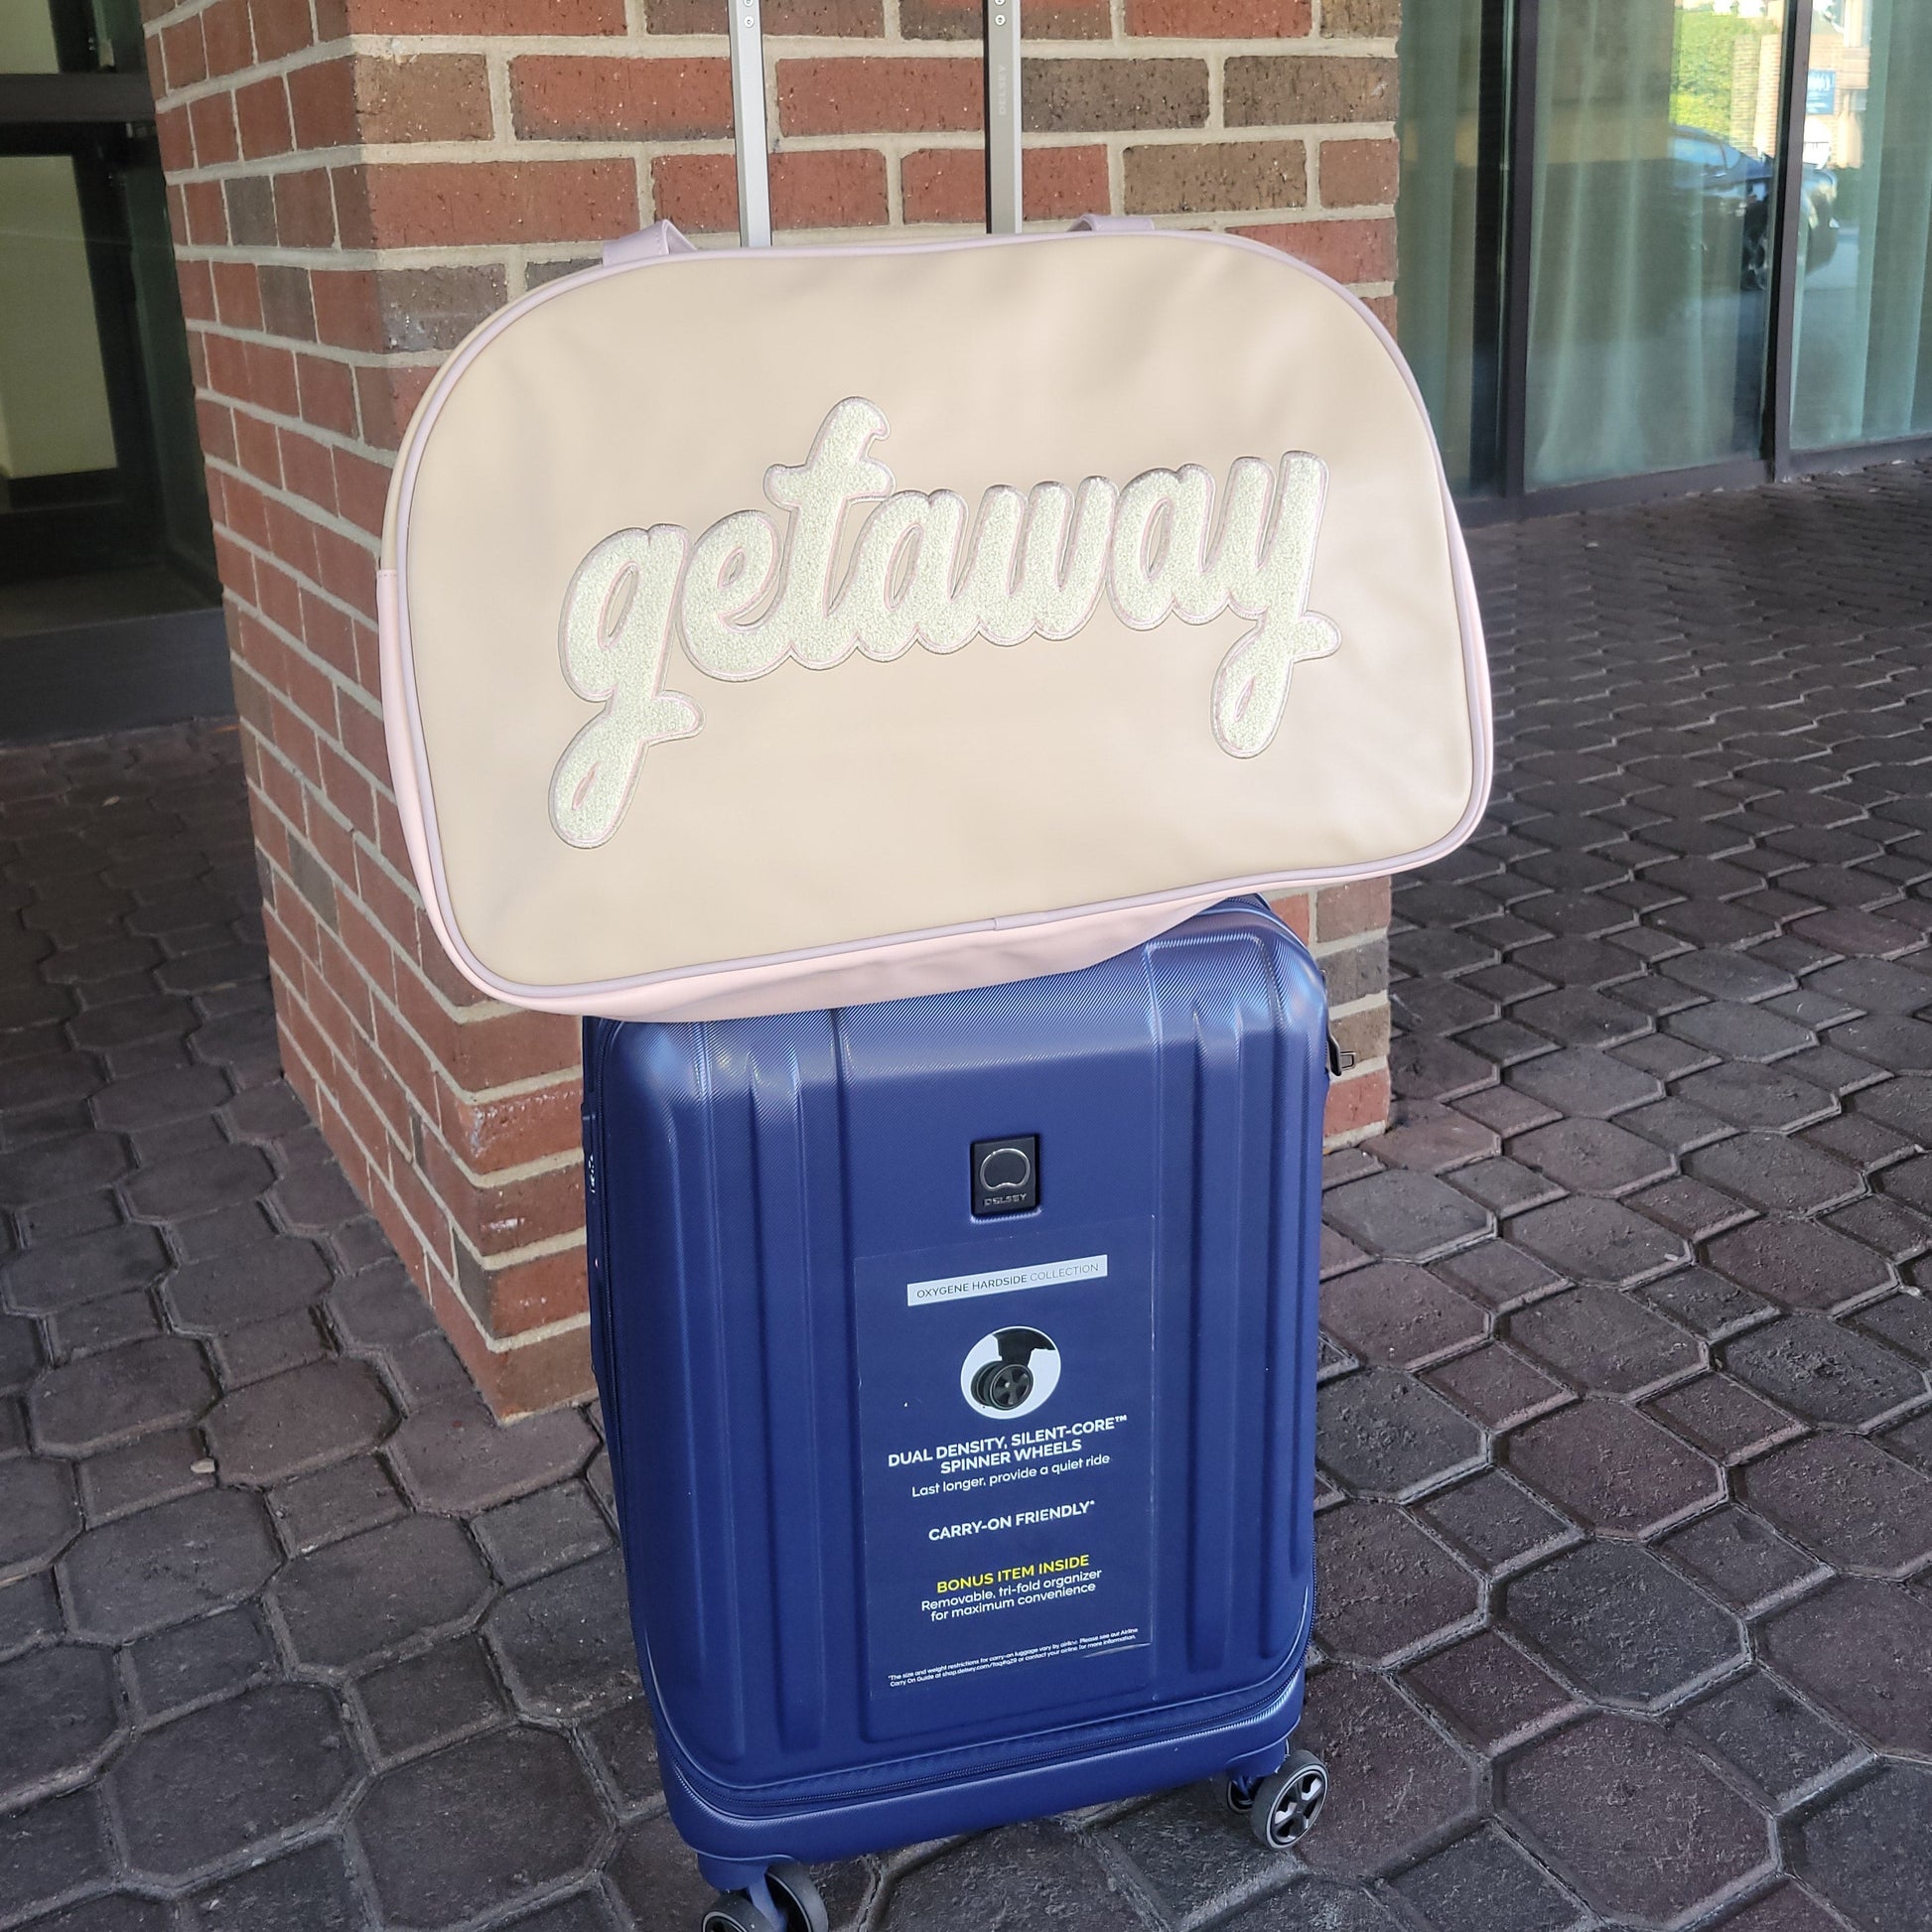 Getaway Weekend Bag